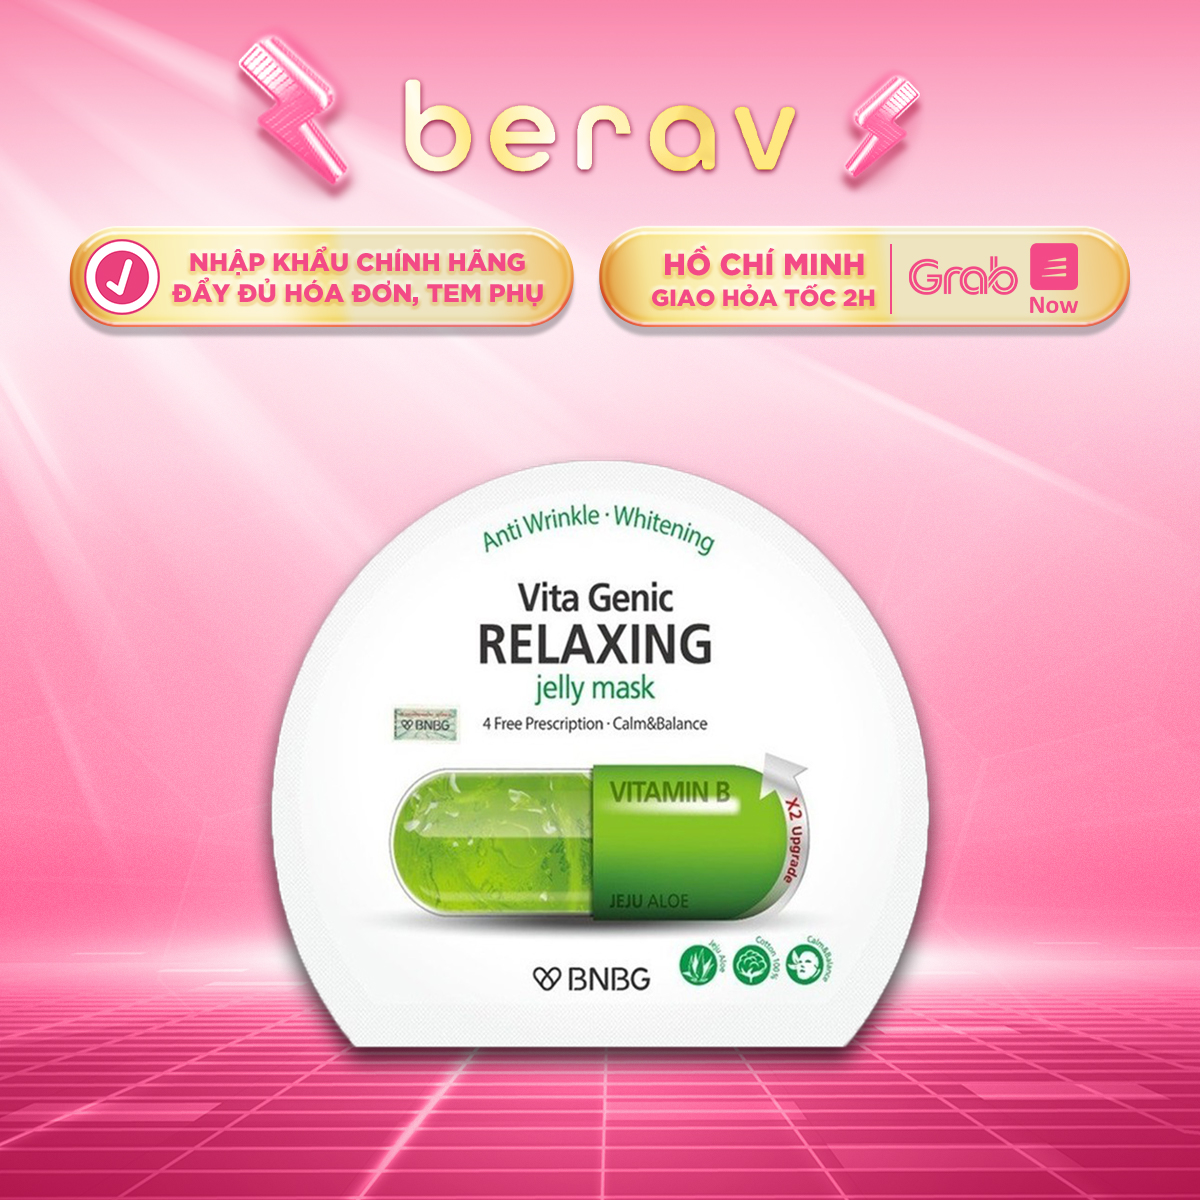 MẶT NẠ BNBG VITAMIN B dưỡng da giúp thư giãn và phục hồi Vita Genic Relaxing Jelly Mask 30ml